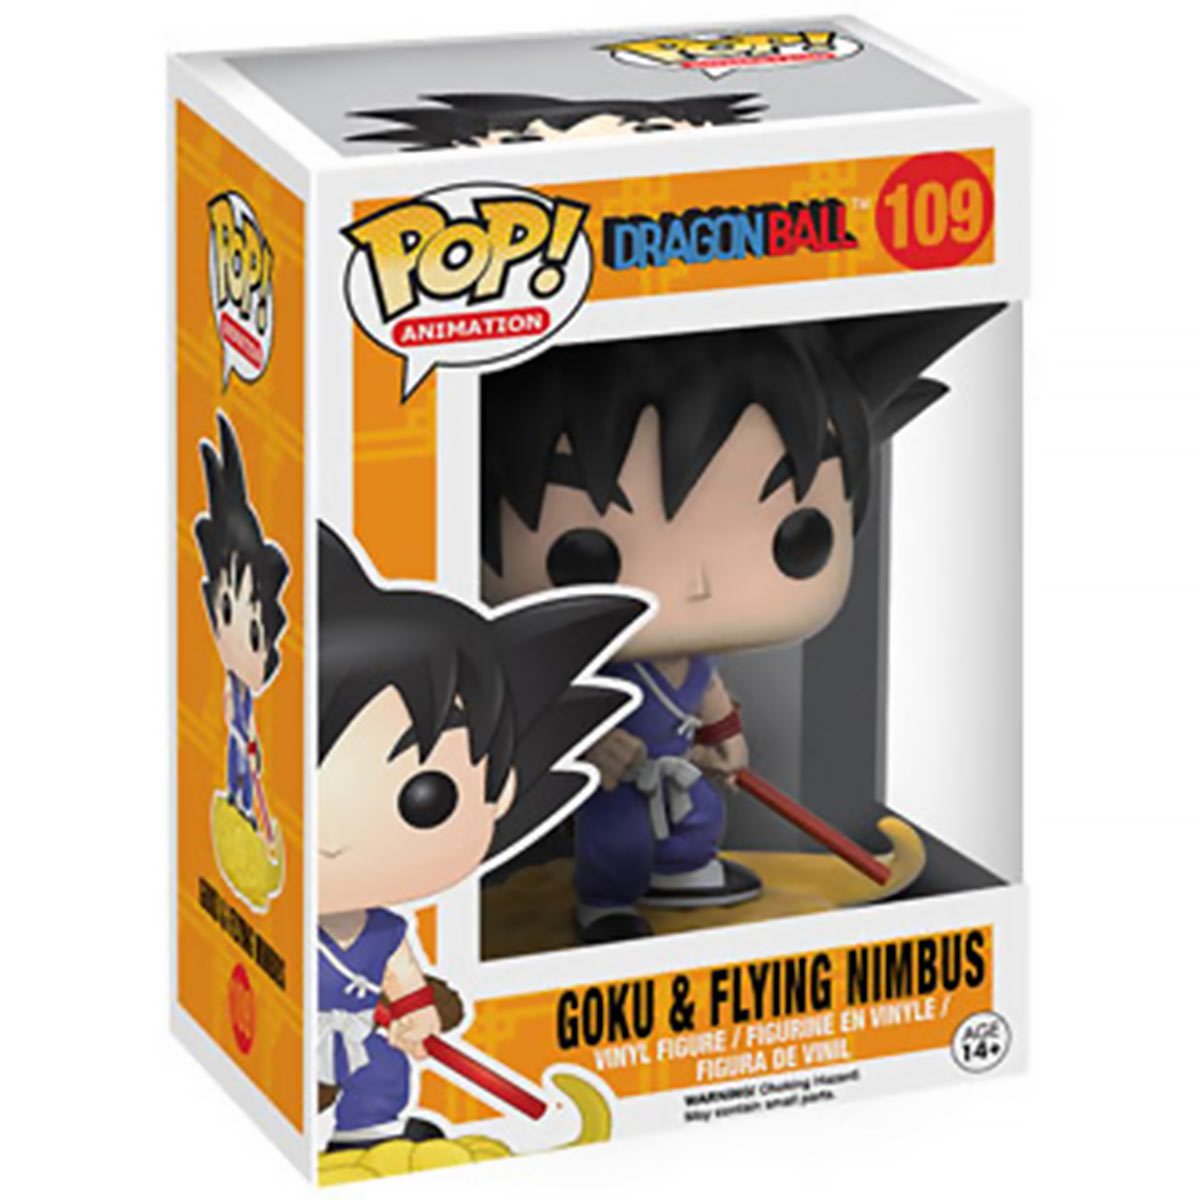 Funko Pop! Animation Dragonball Goku & Flying Nimbus Vinyl Figure 109